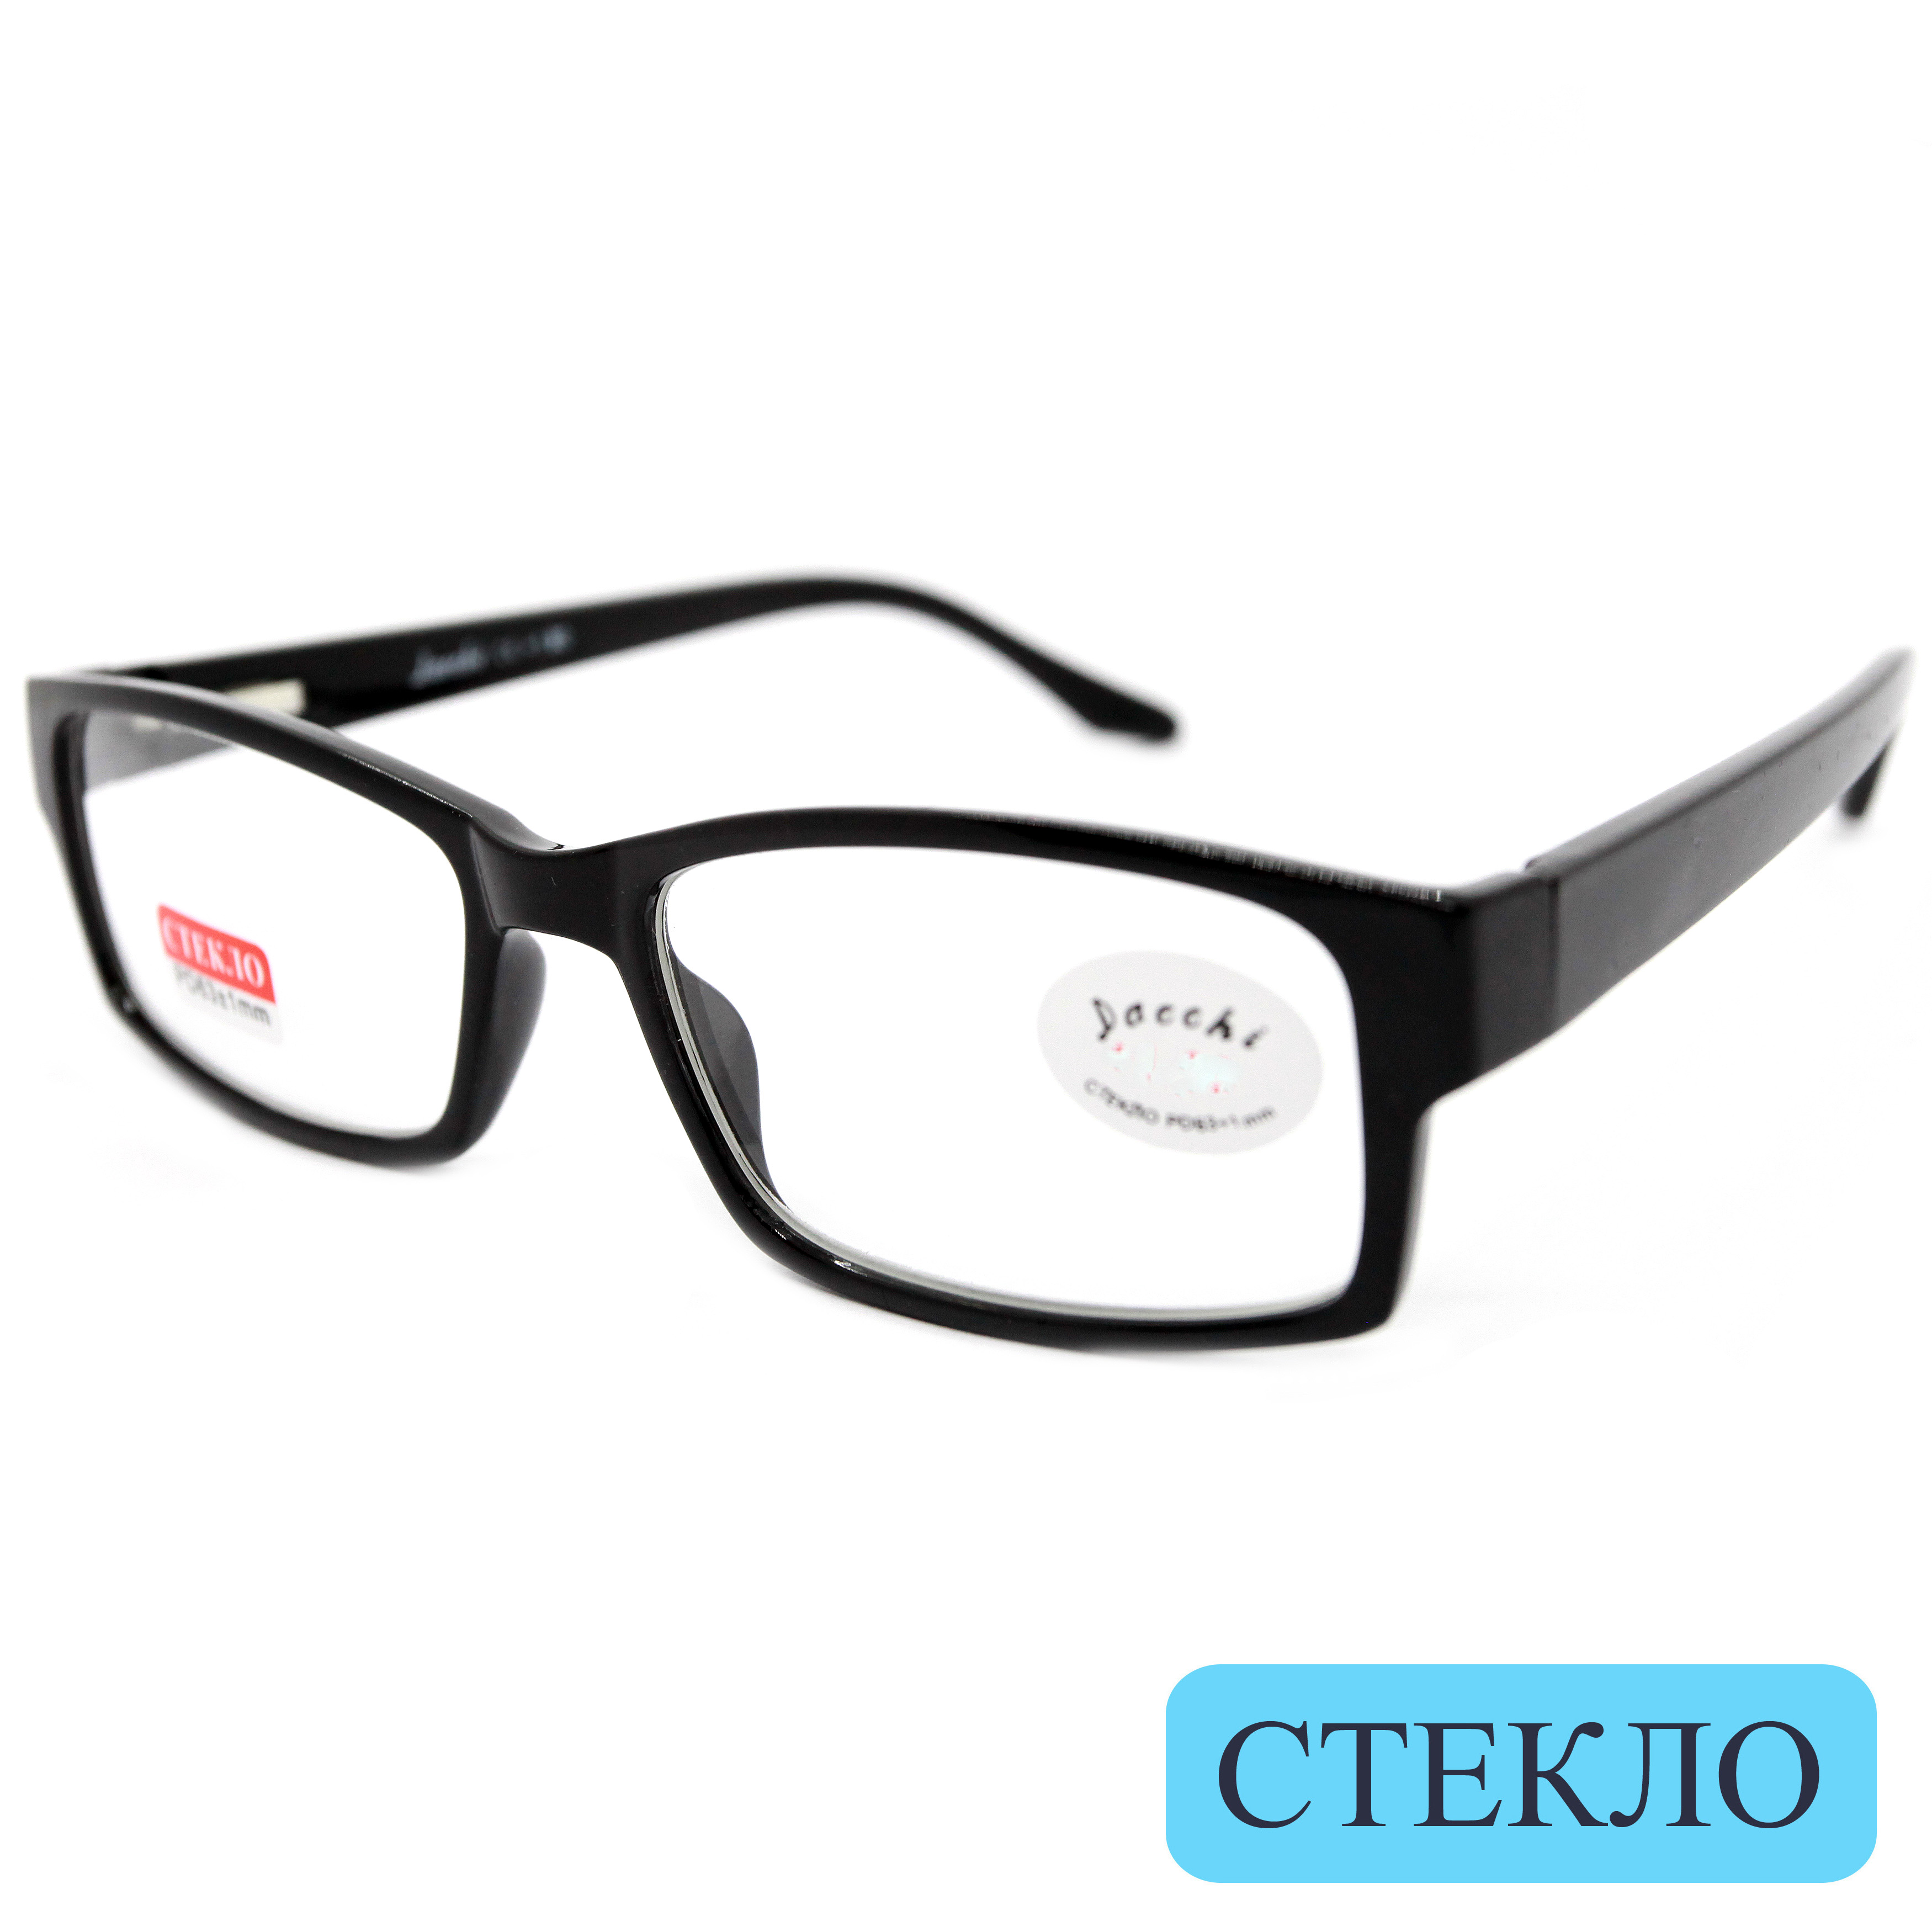 Готовые очки DACCHI 335, со стеклянной линзой, +1,50, без футляра, черные, РЦ 62-64